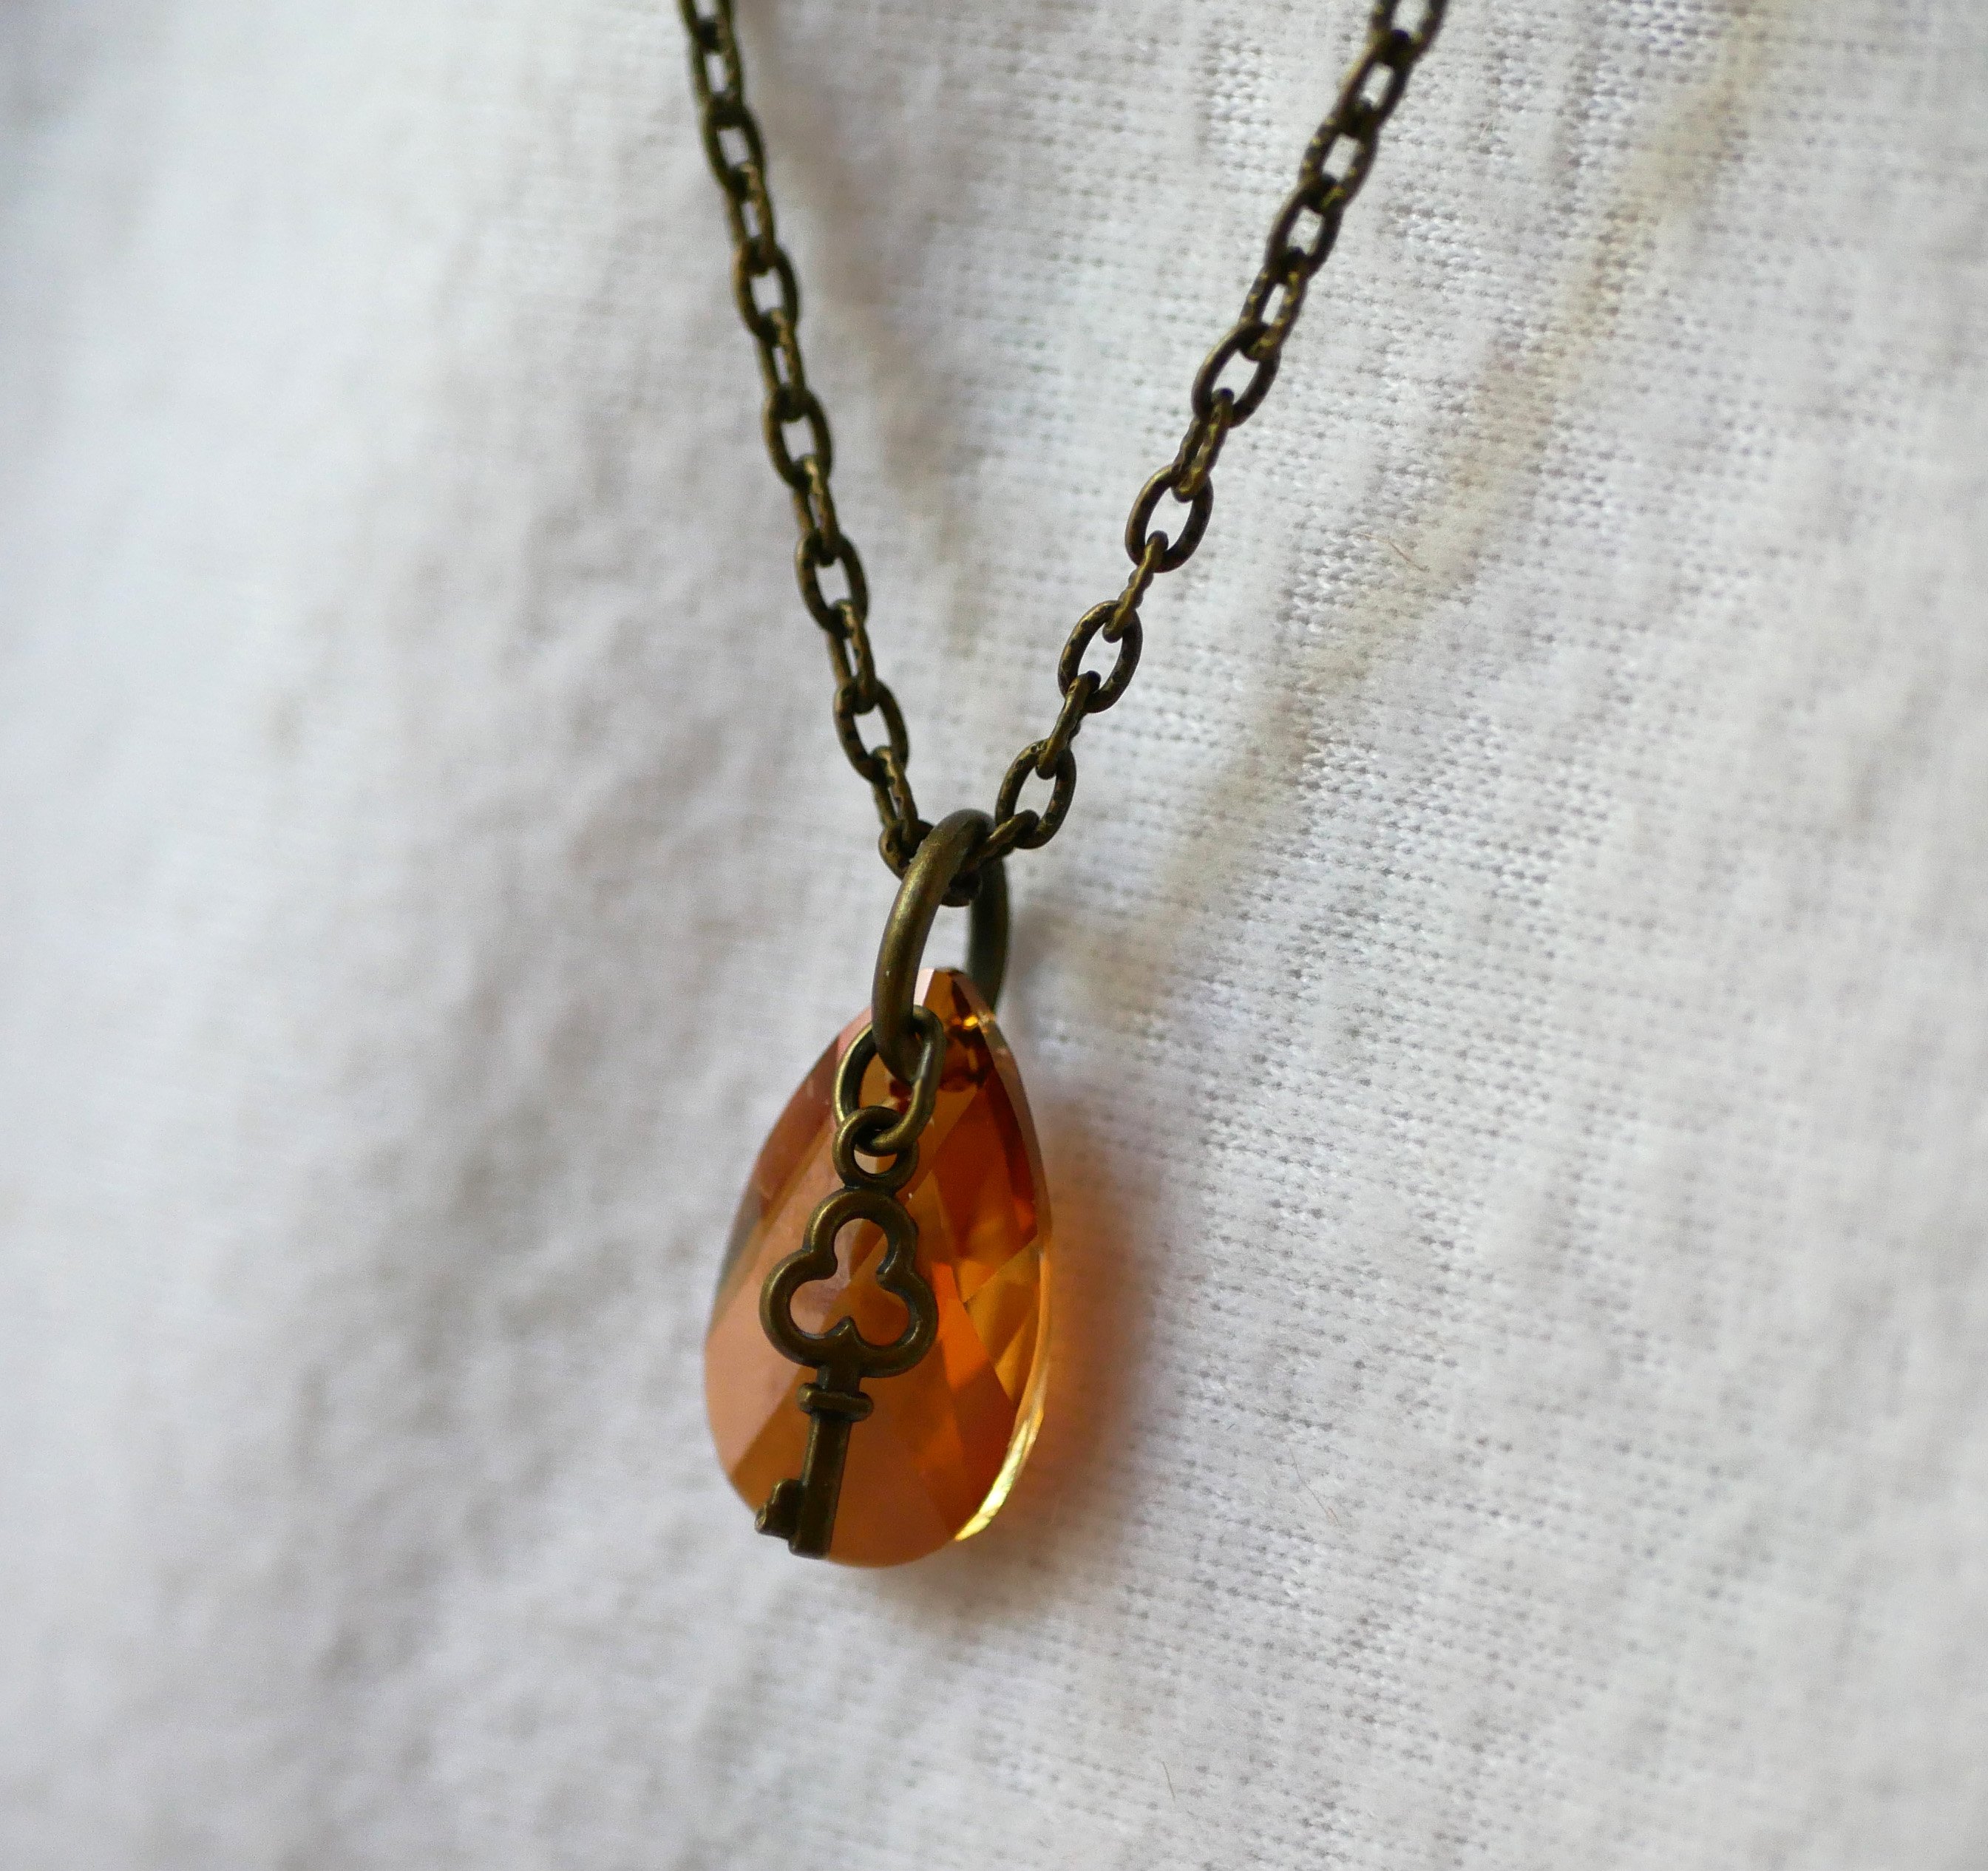 Collier pendentif Swarovski Larme ambre cuivré sur chaîne bronze vieilli